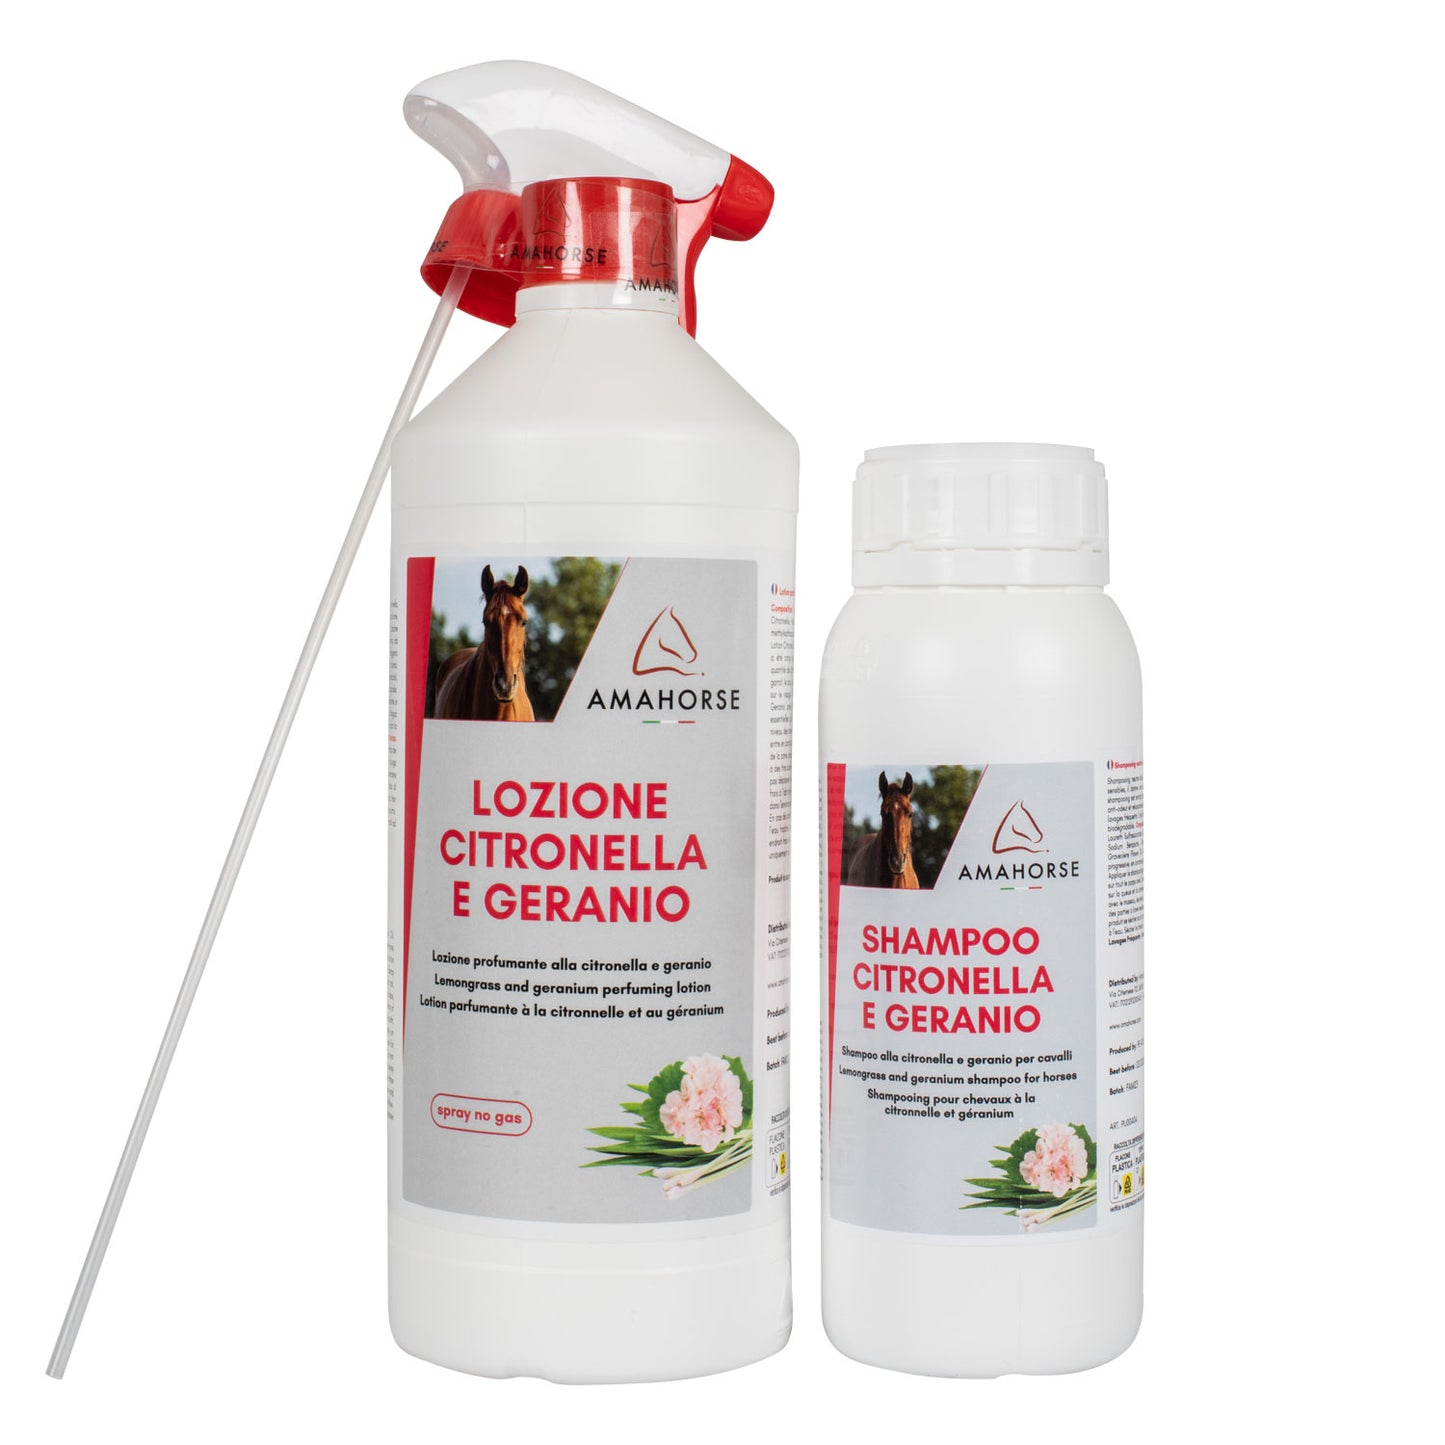 Kit Repellente Spray + Shampoo alla Citronella